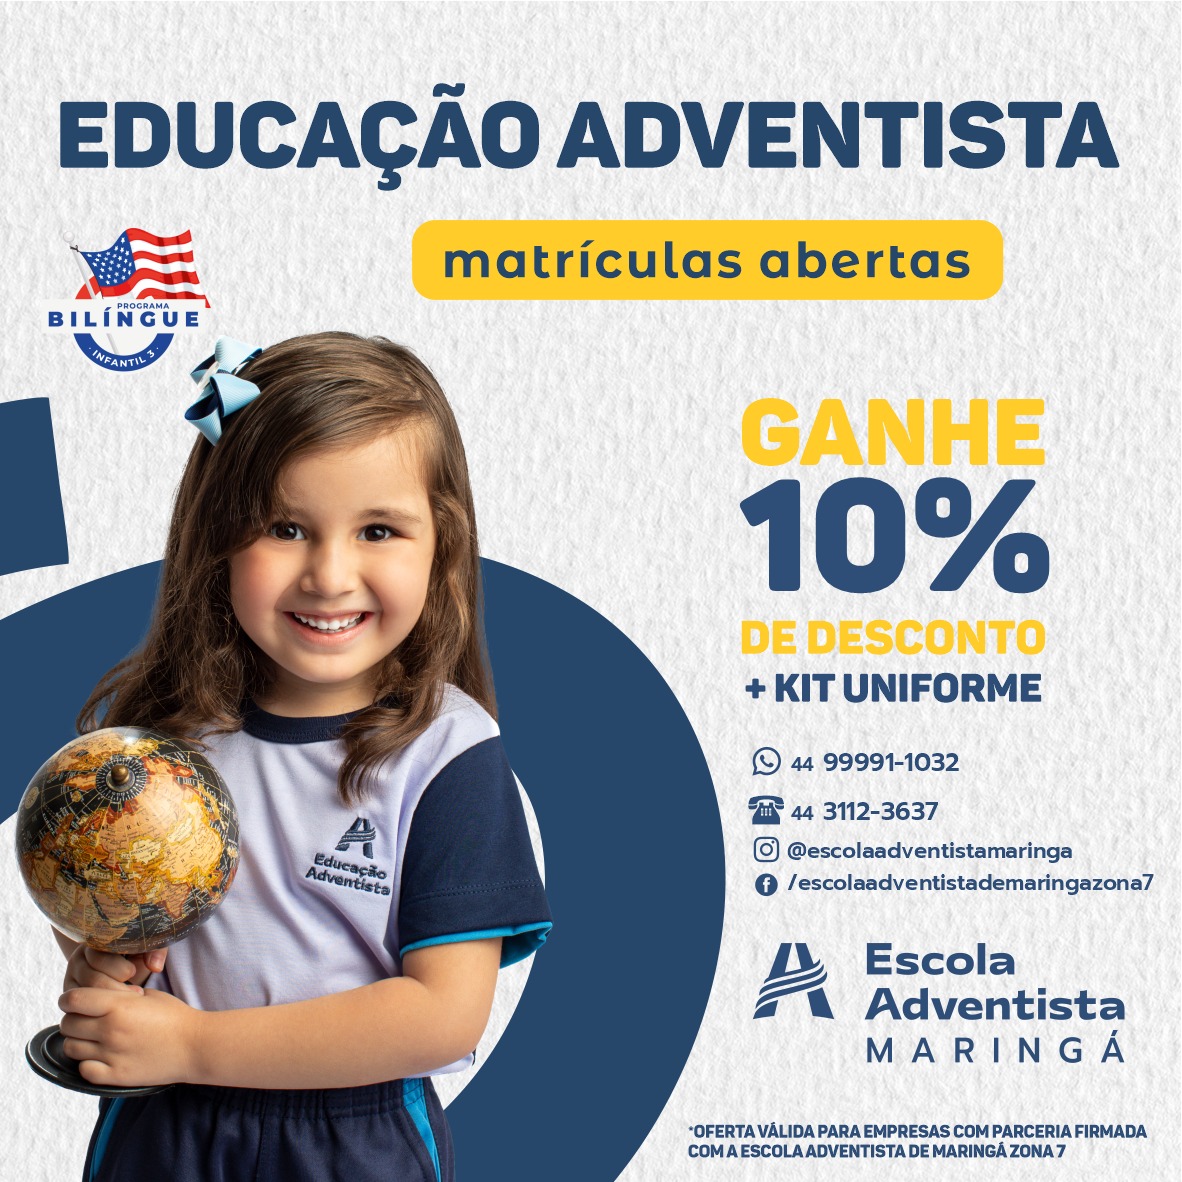 Escolas Particulares por Valor de Mensalidade com bolsa de estudos em  Paranavaí - PR